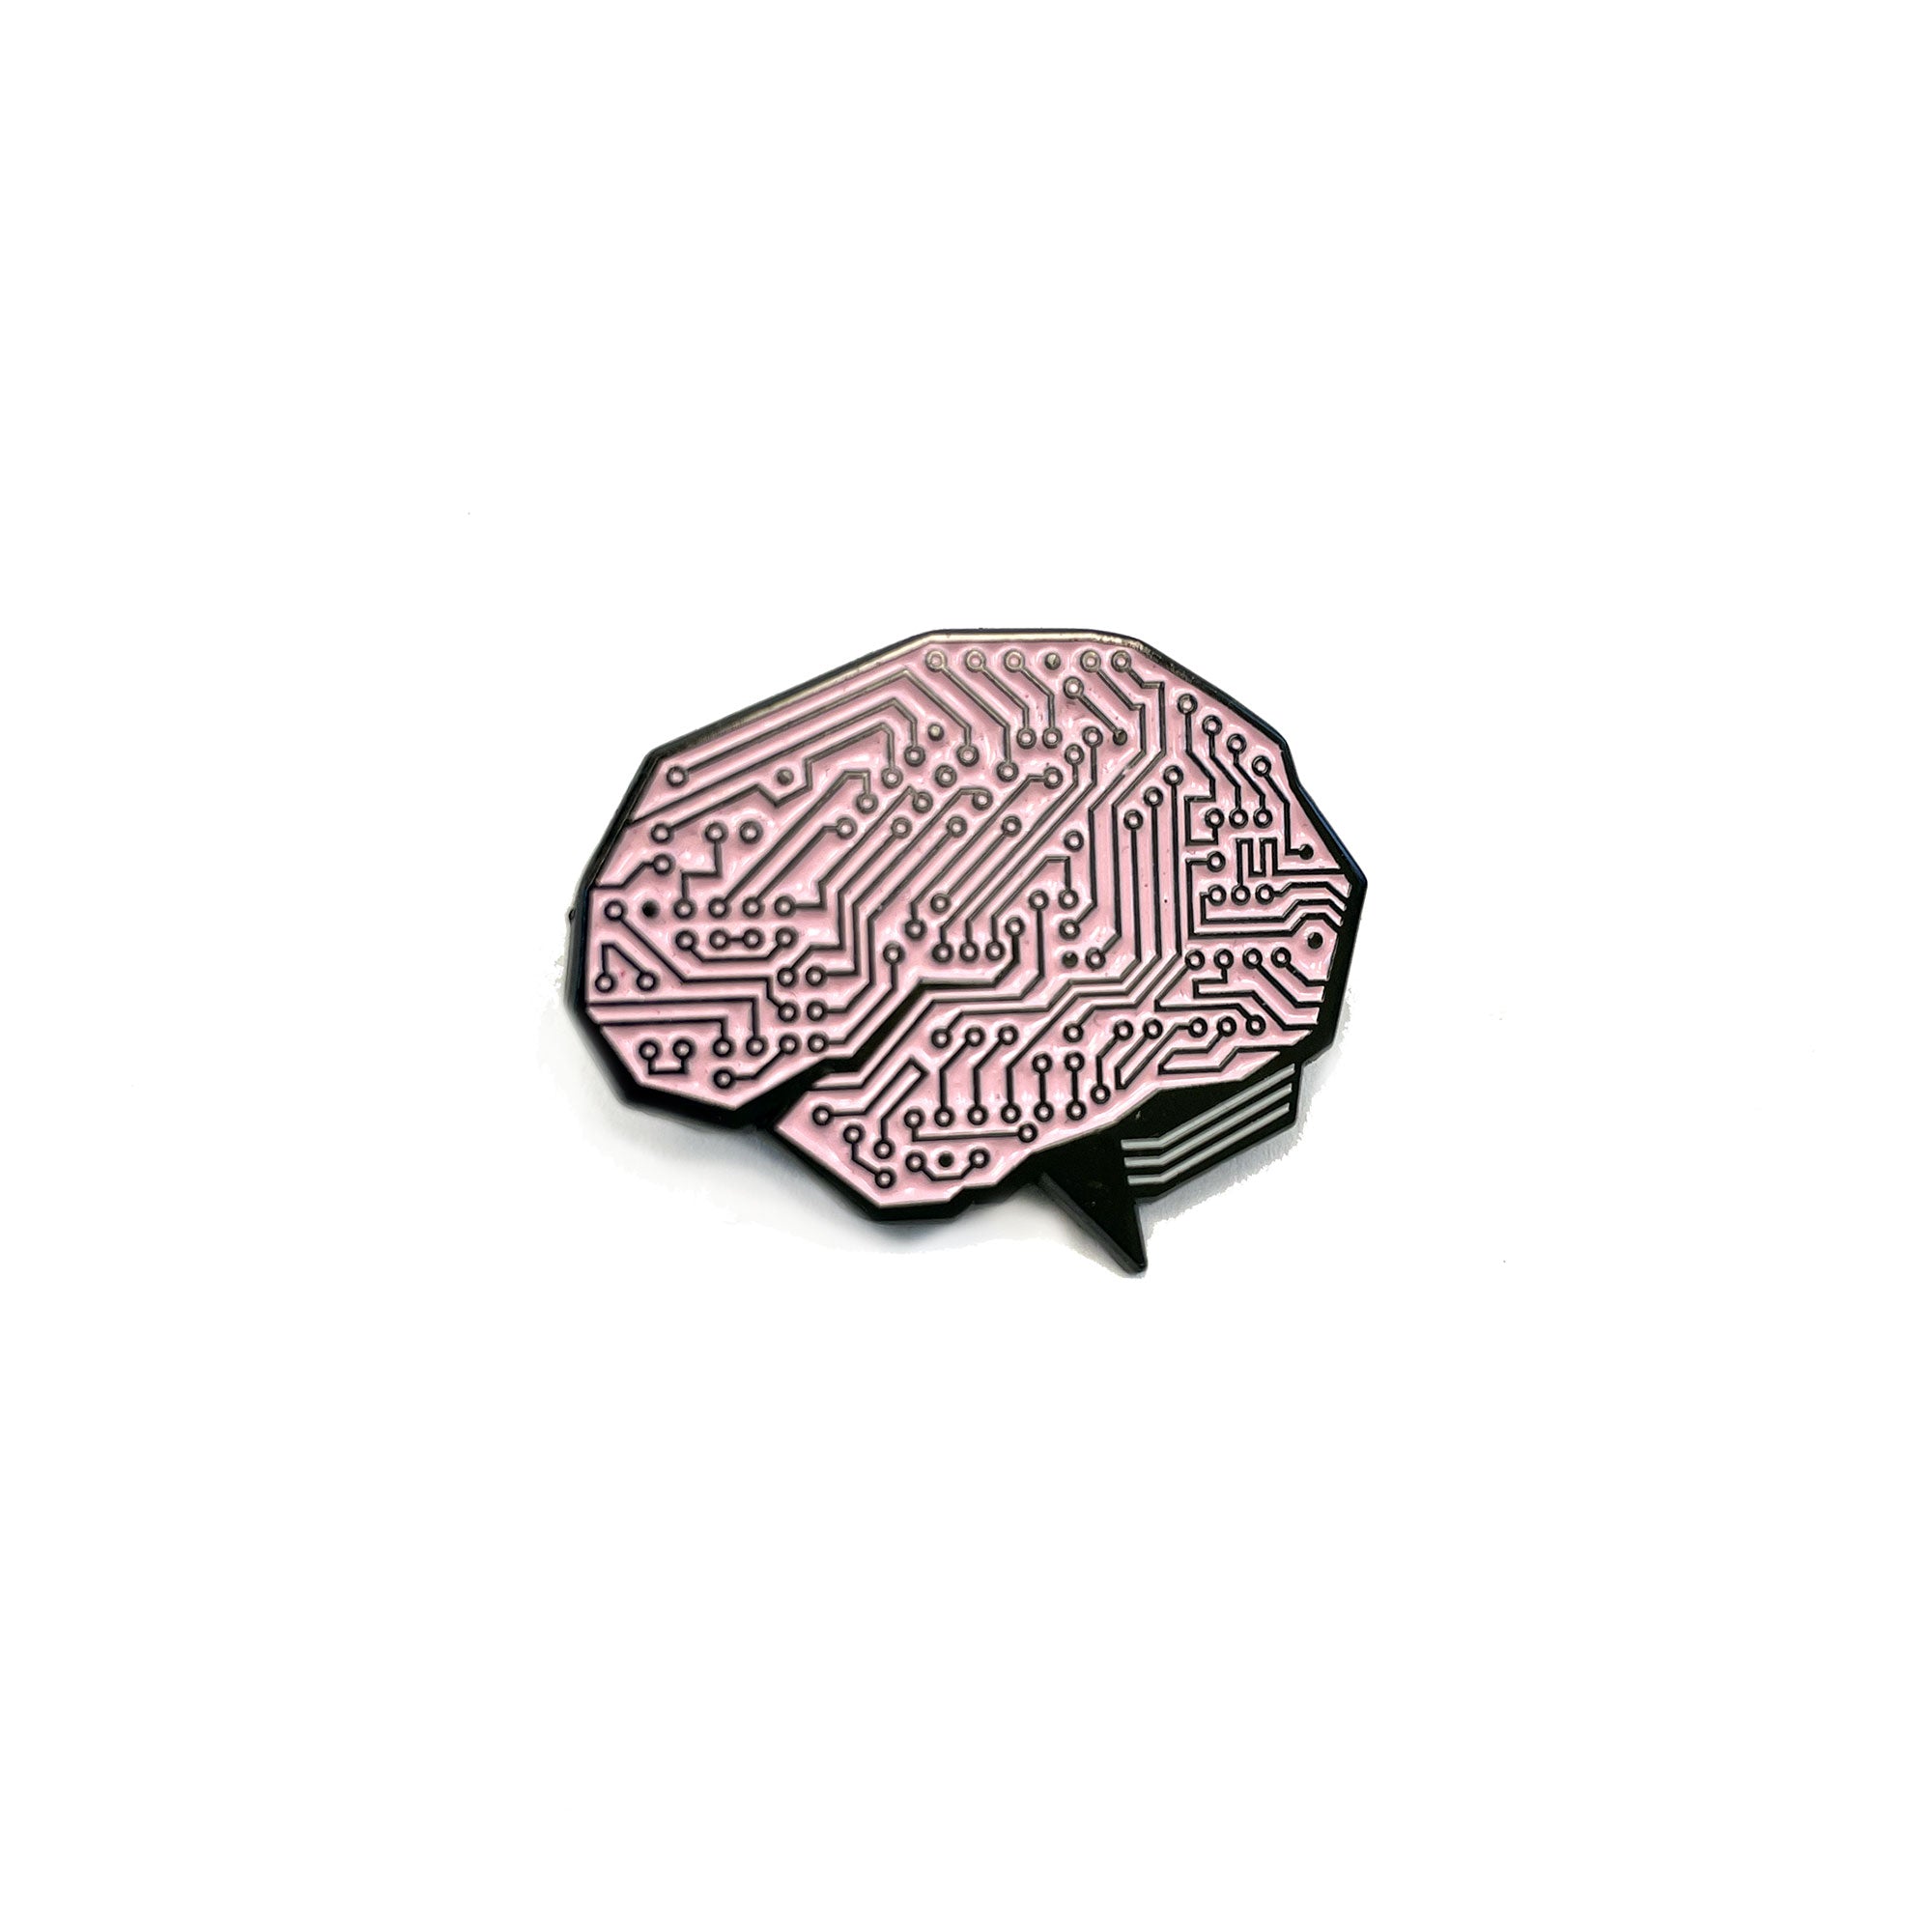 AI Brain Pin - Techy Gift Ideas - Story Spark